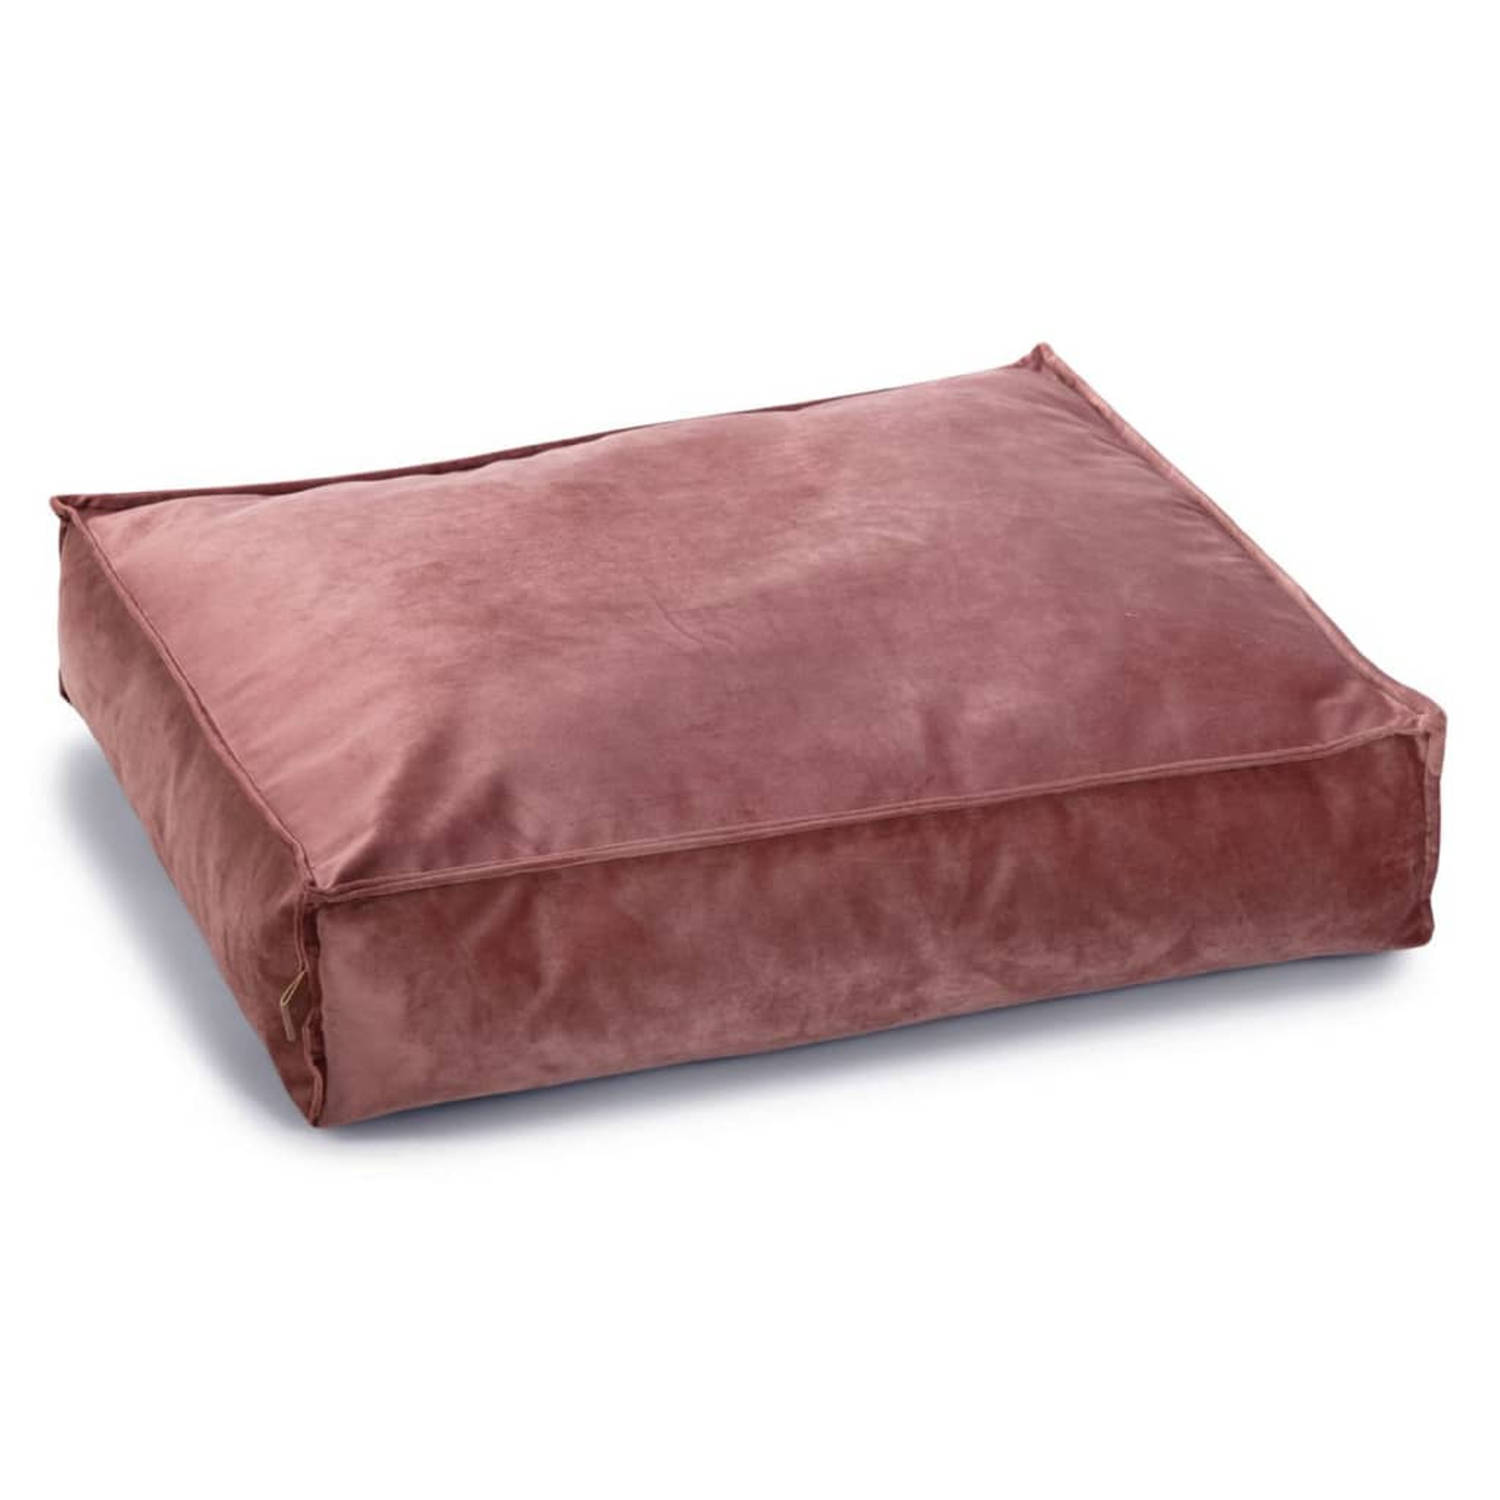 Designed by lotte nalino hondenkussen fluweel roze 70x55x15 c cm